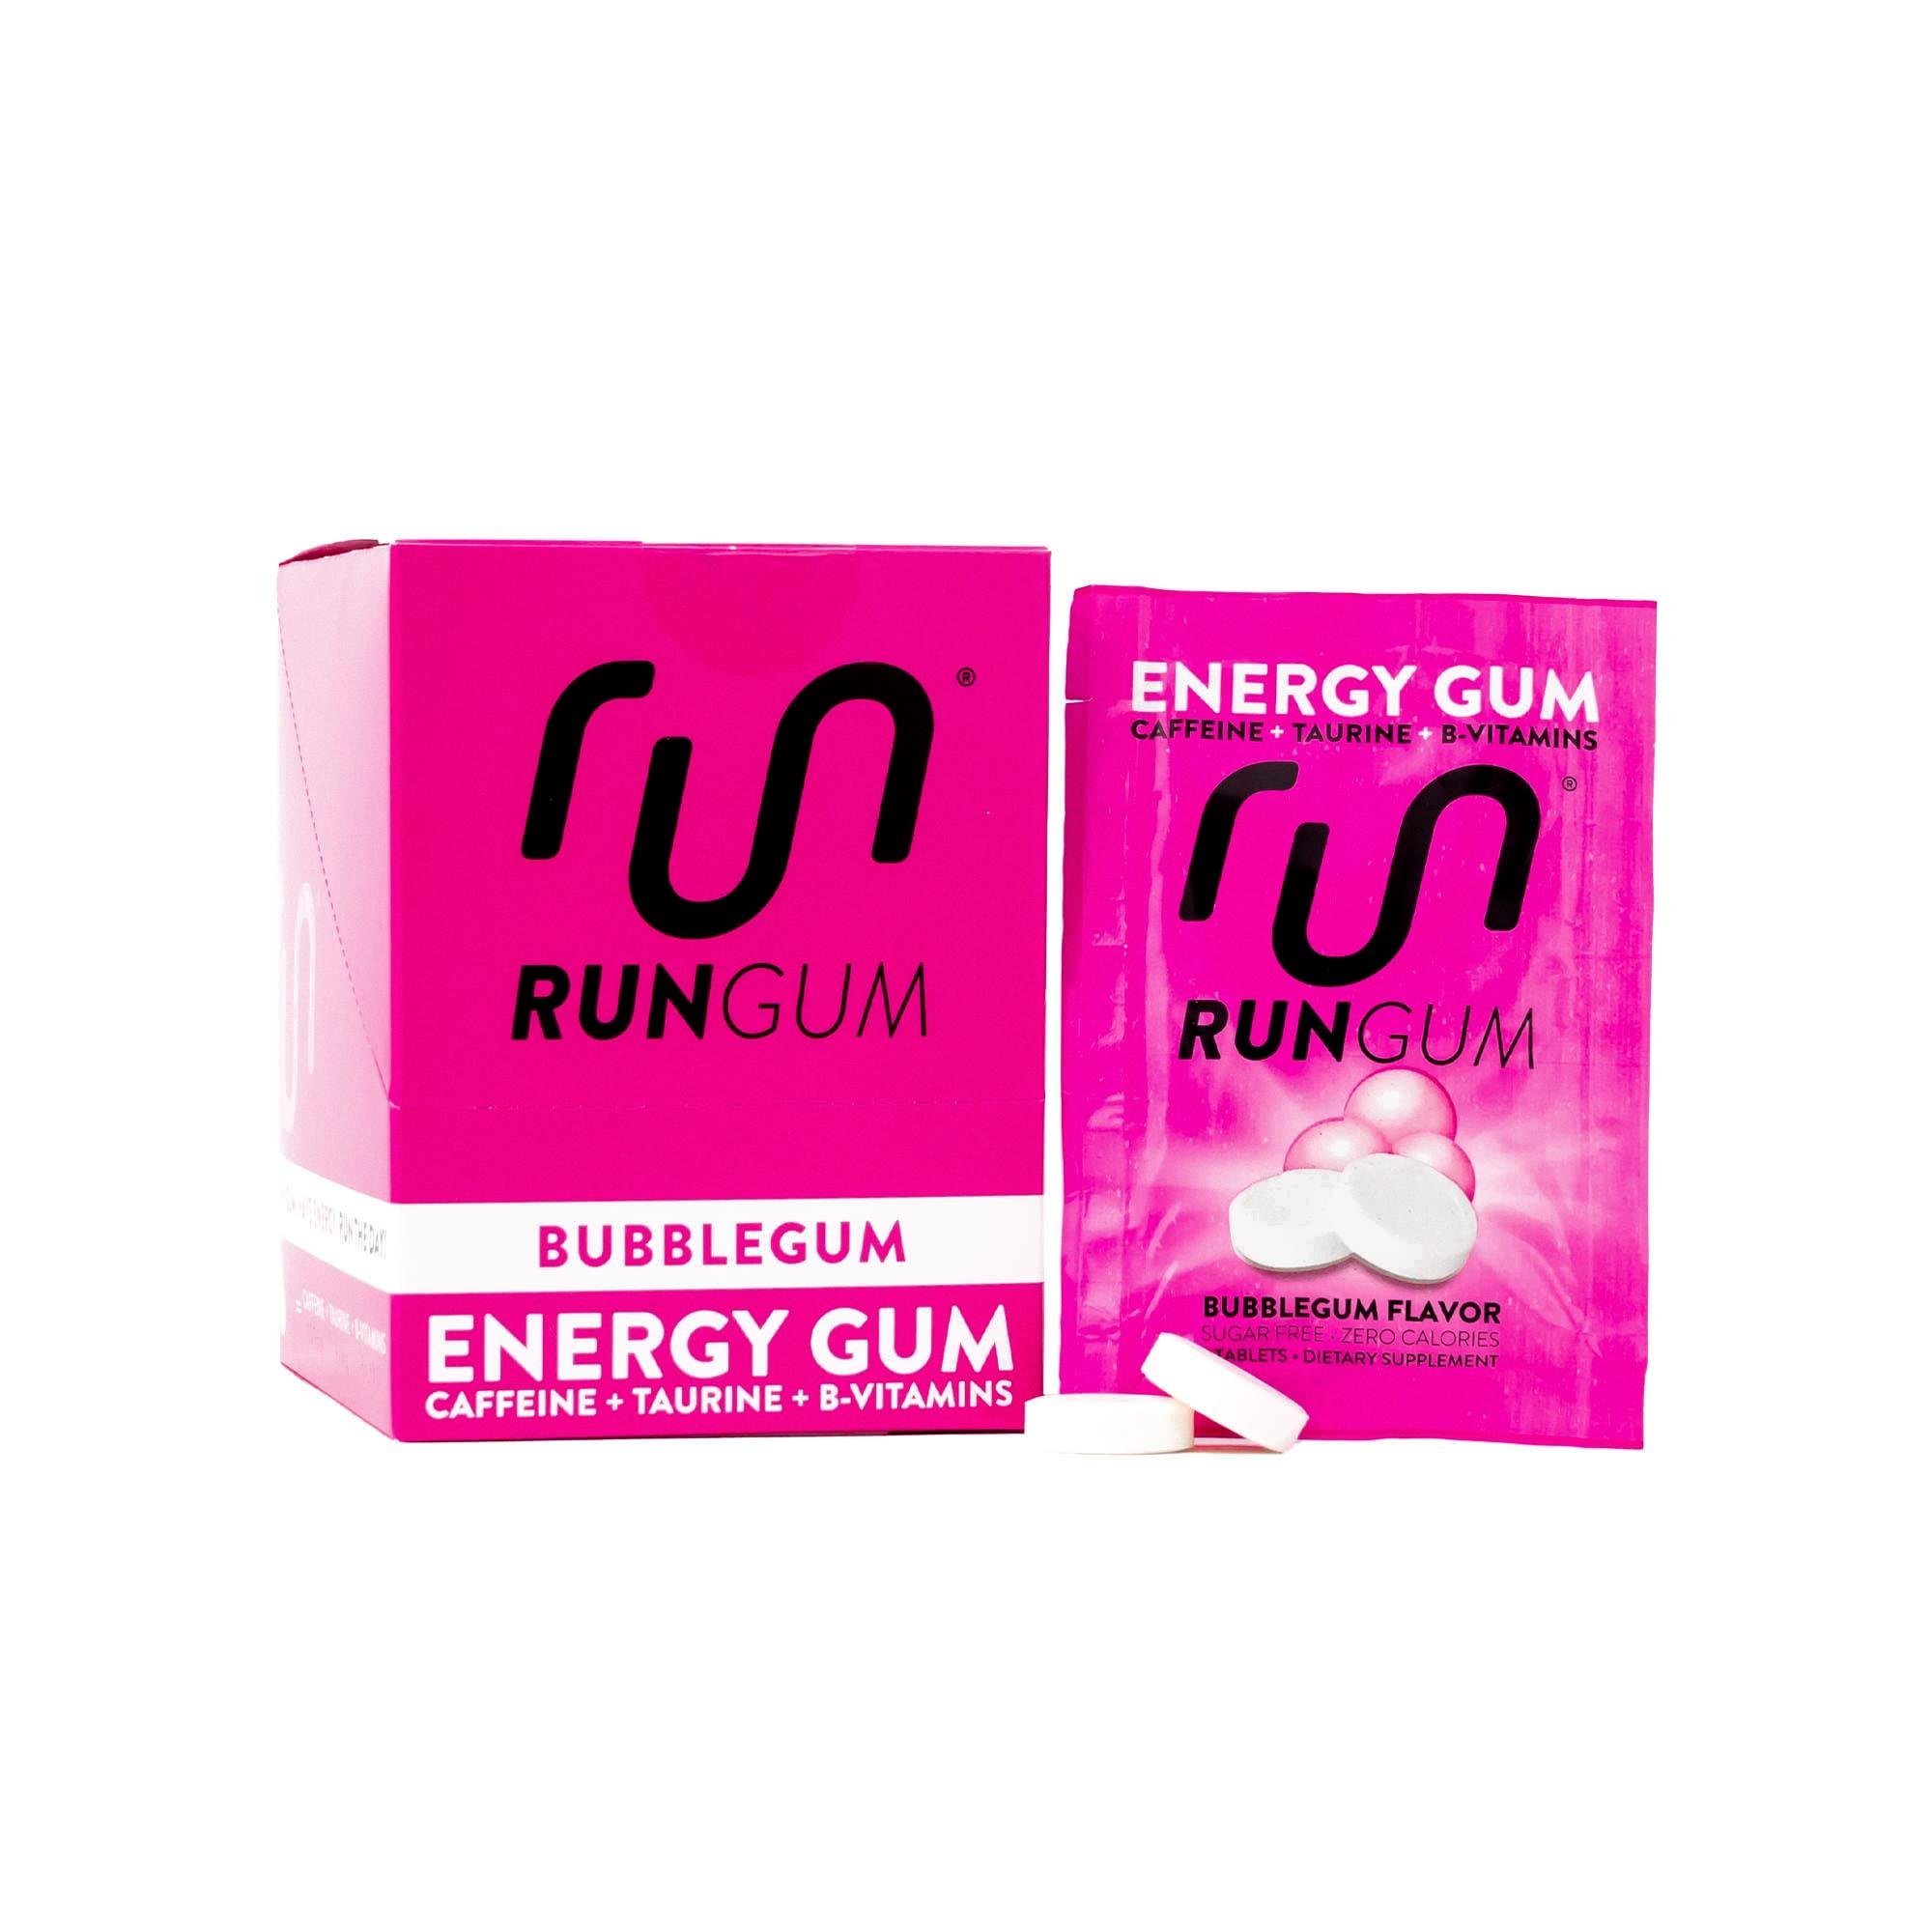 does gum have calories